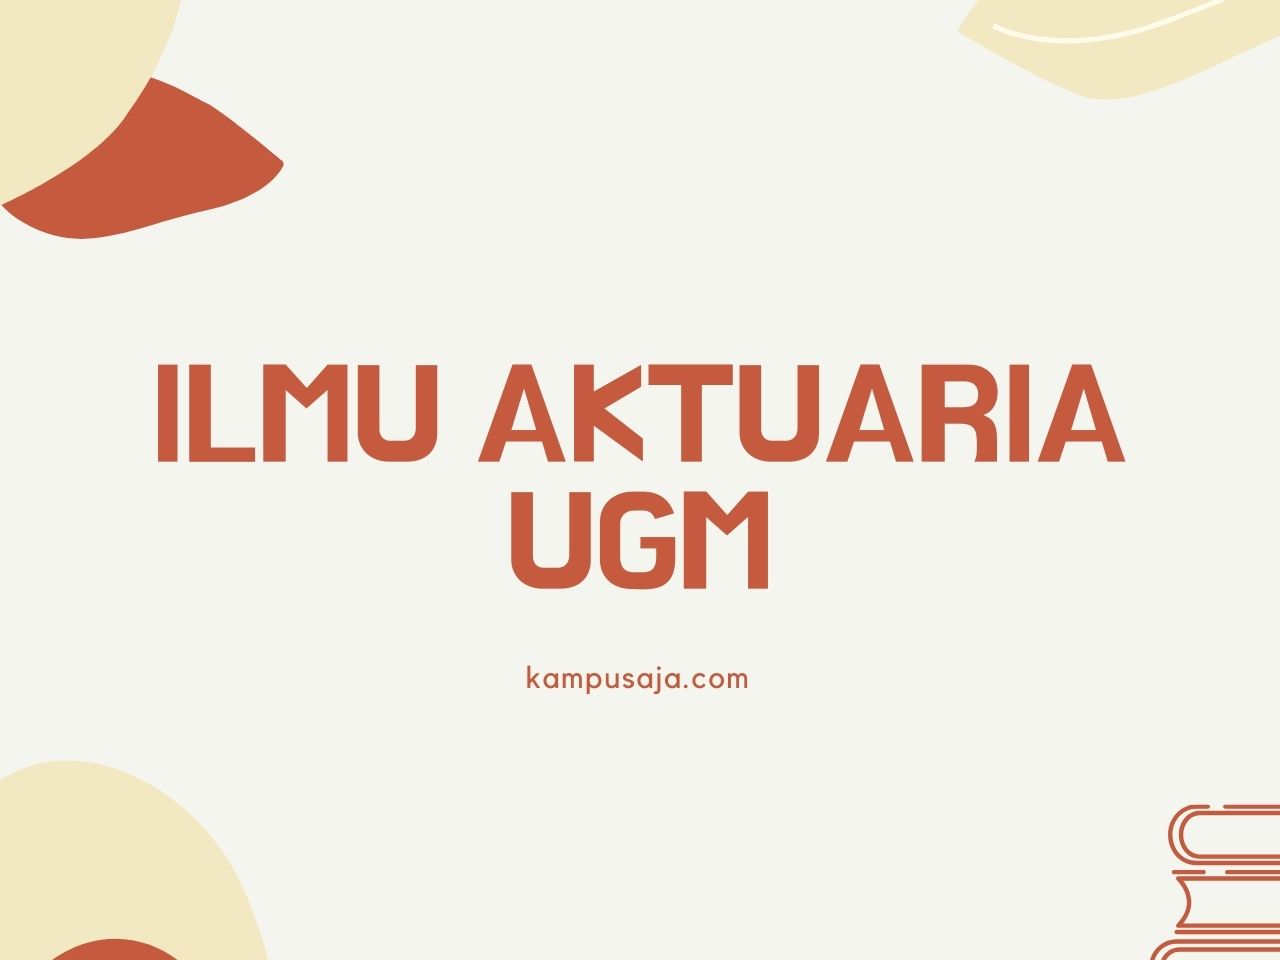 Ilmu Aktuaria UGM